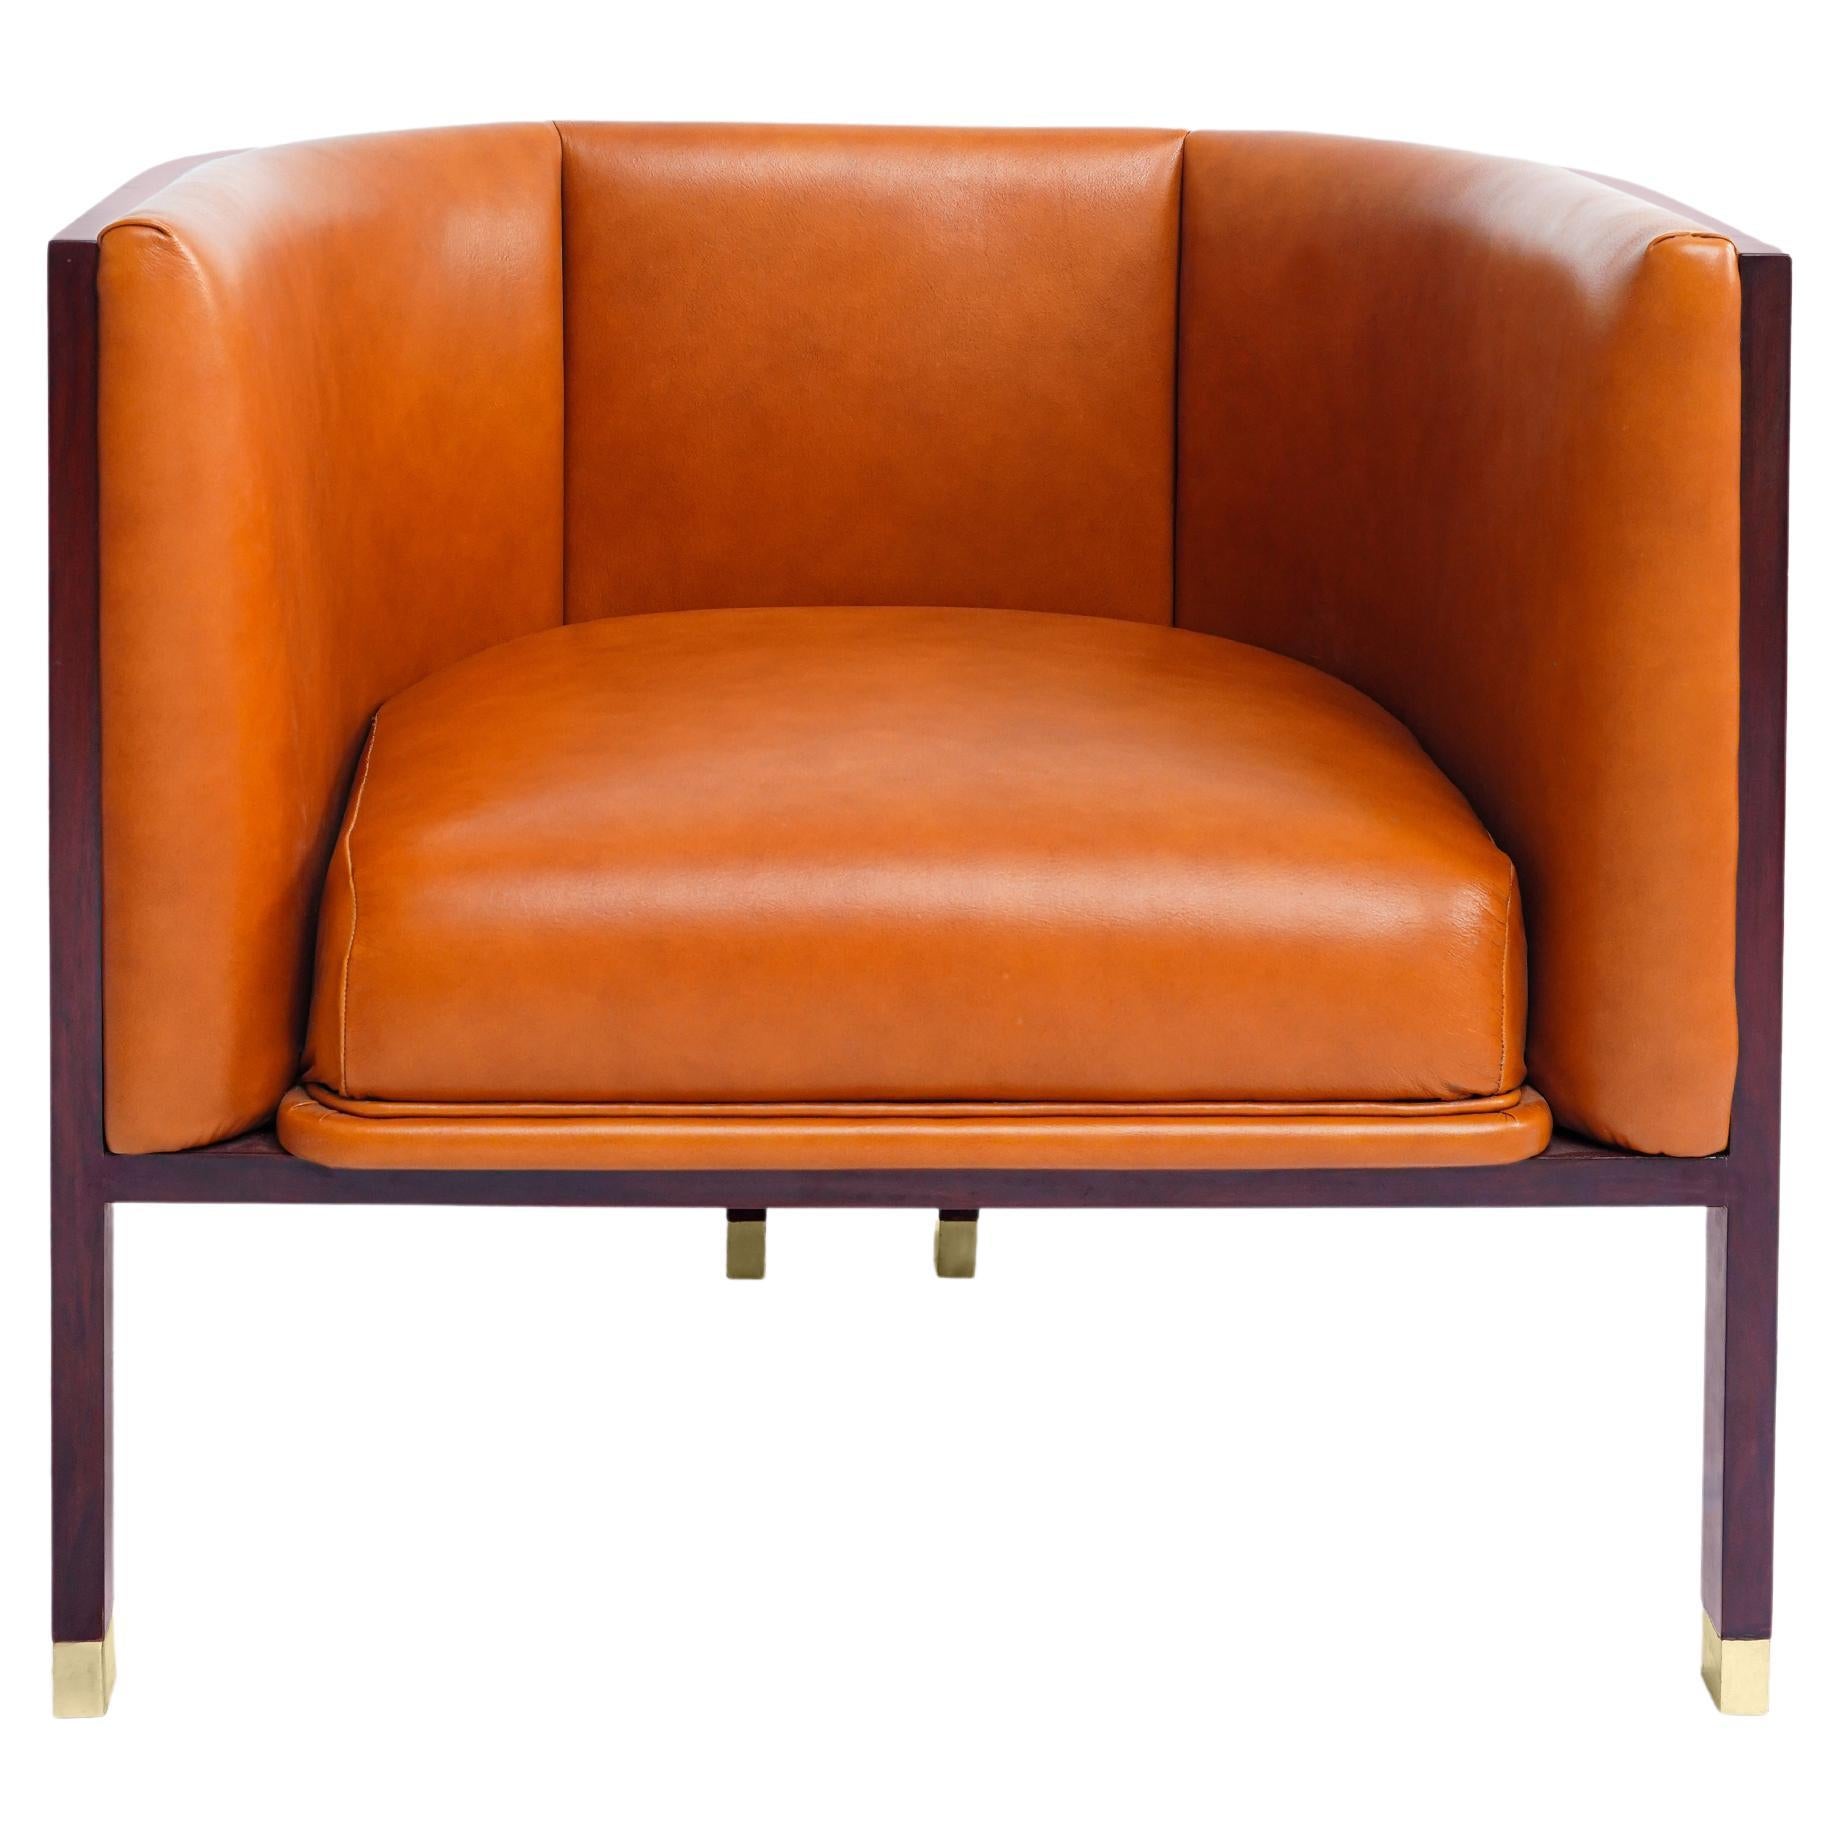 Erleben Sie die zeitlose Eleganz von Erete: Ein moderner, kühner Stuhl mit Faßrücken und originellem Design

Lassen Sie sich von Erete verzaubern, einem kühnen und exquisit gefertigten Stuhl mit Tonnenlehne, der die Ästhetik der Mitte des